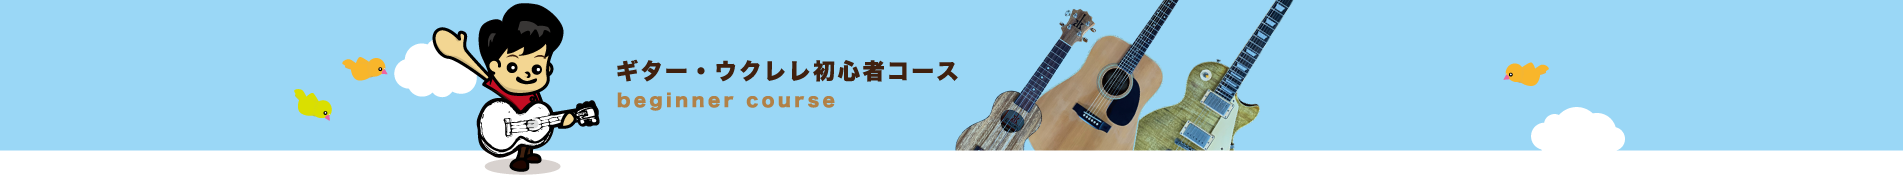 ギター・ウクレレ初心者コース